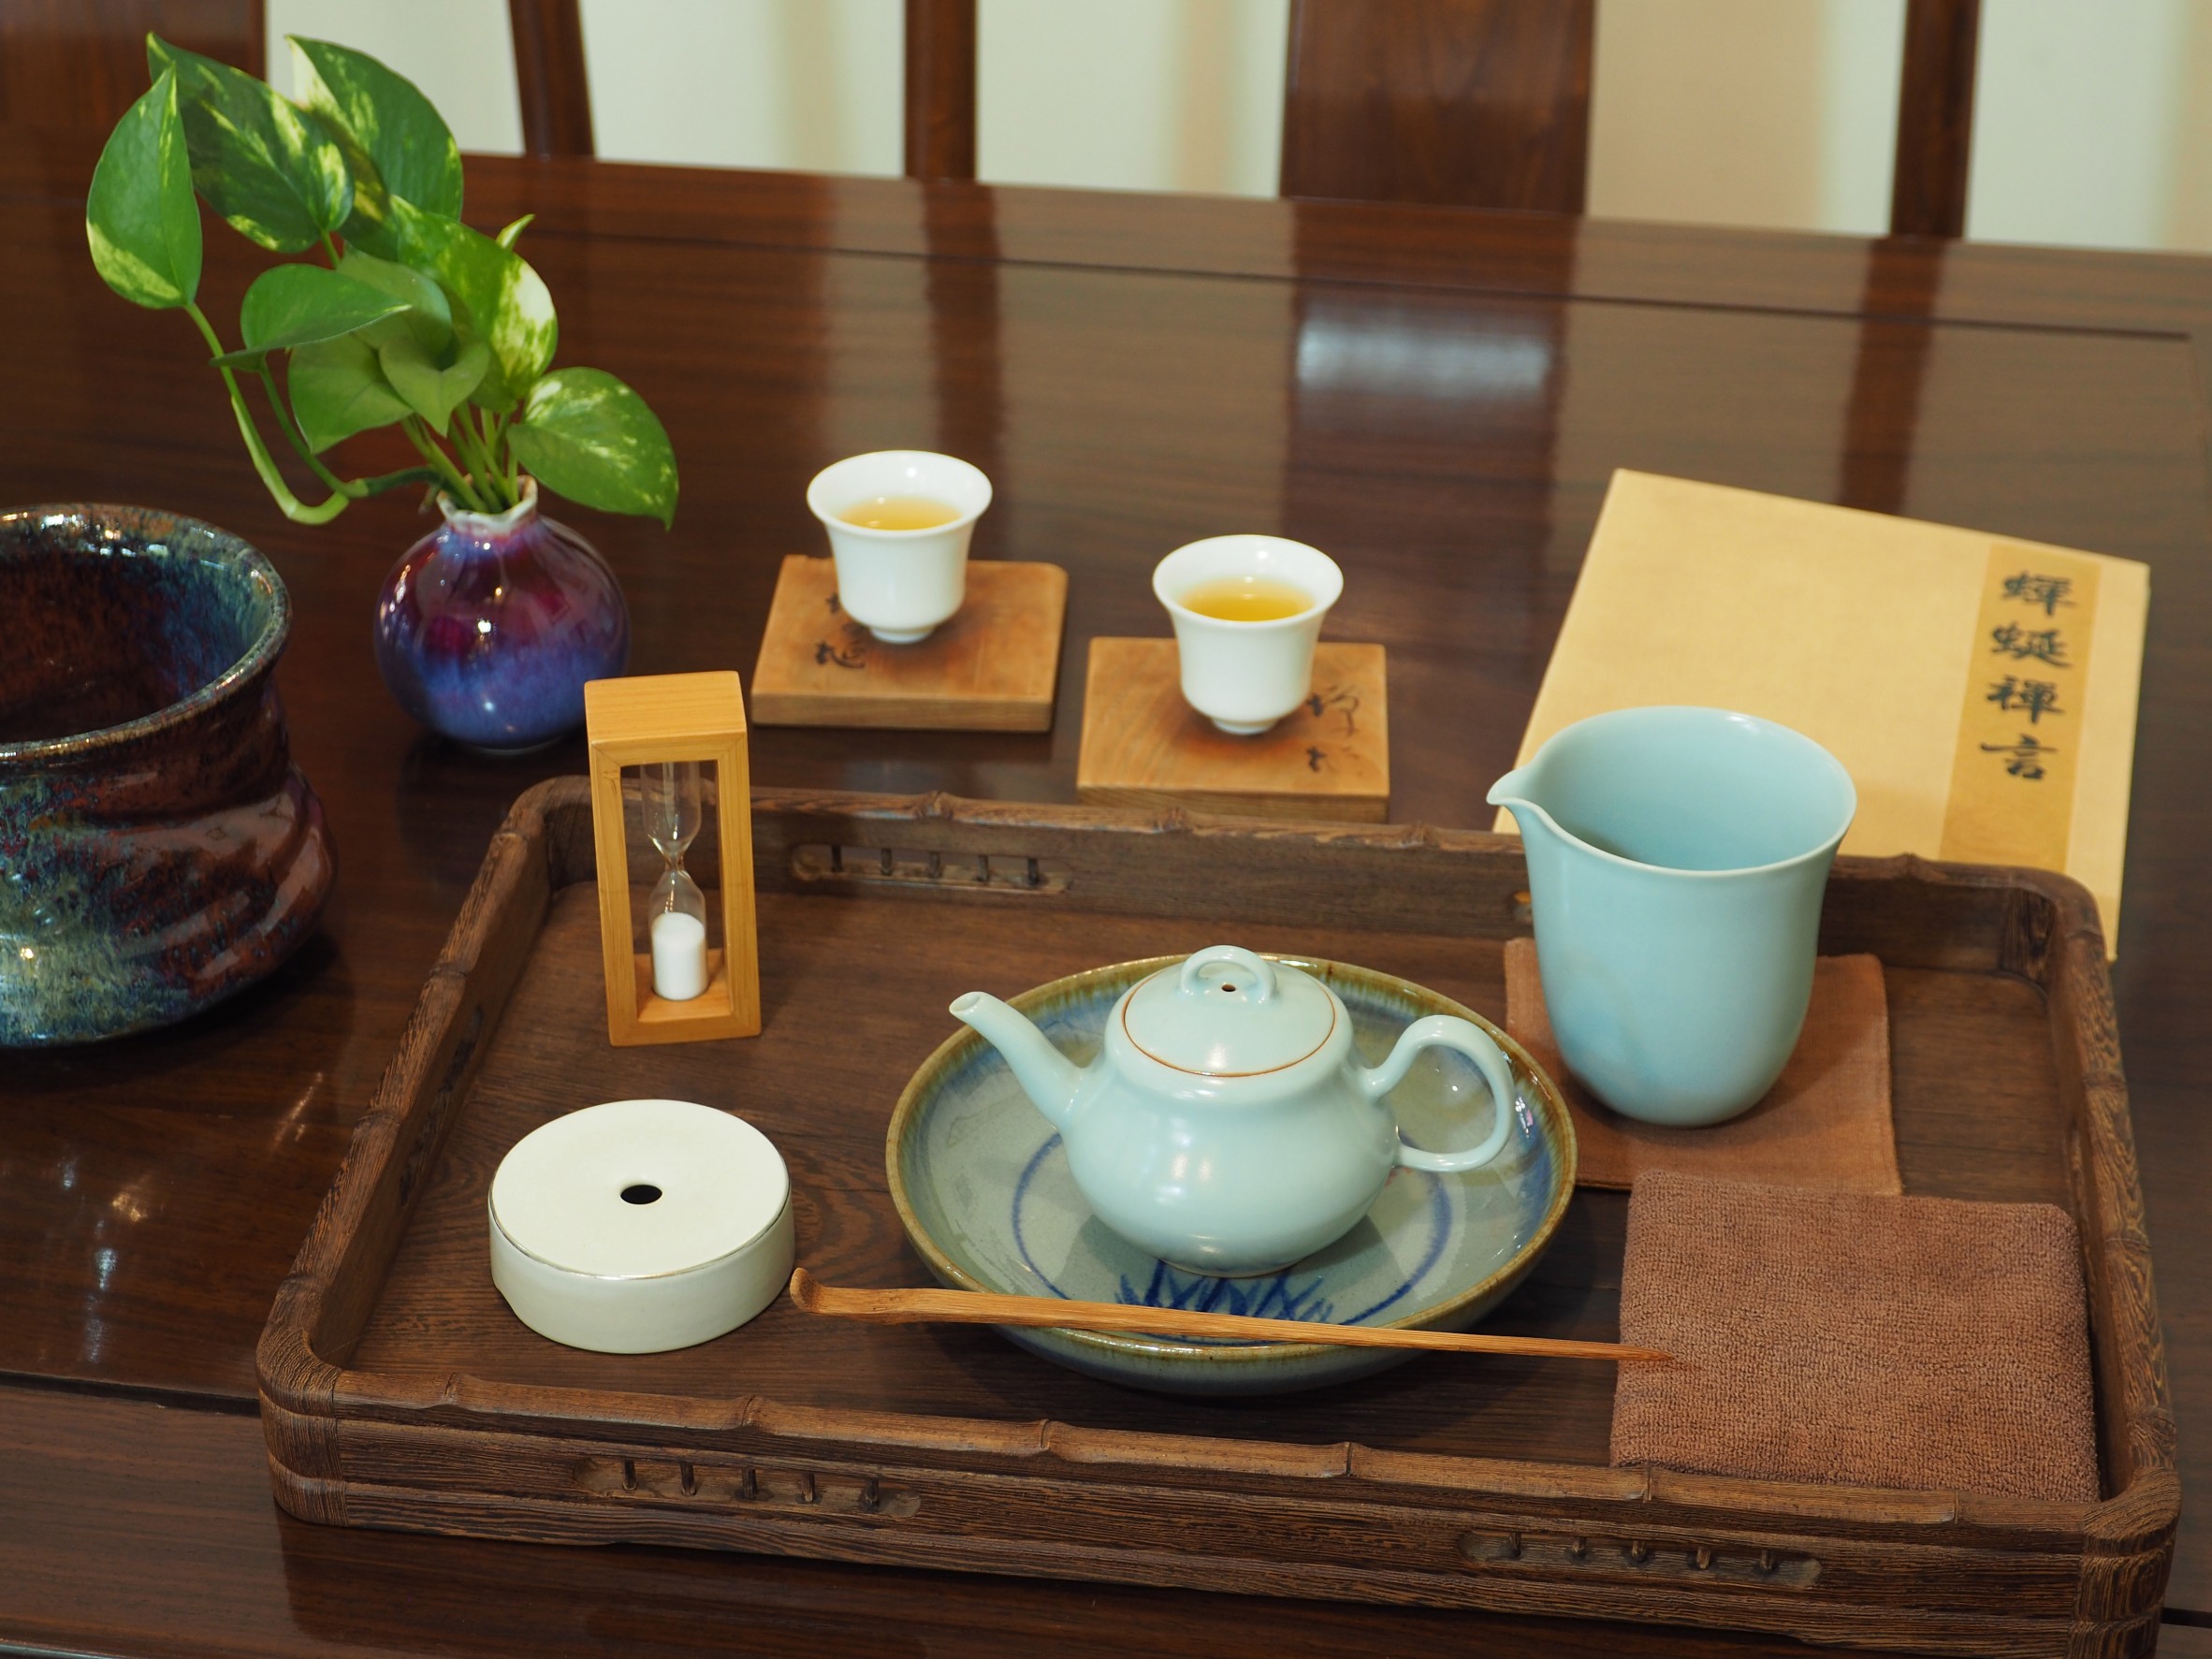 茶館內［壺泡品茗］，茶水費每人150元、茶葉費用另計，每人消費約230元起